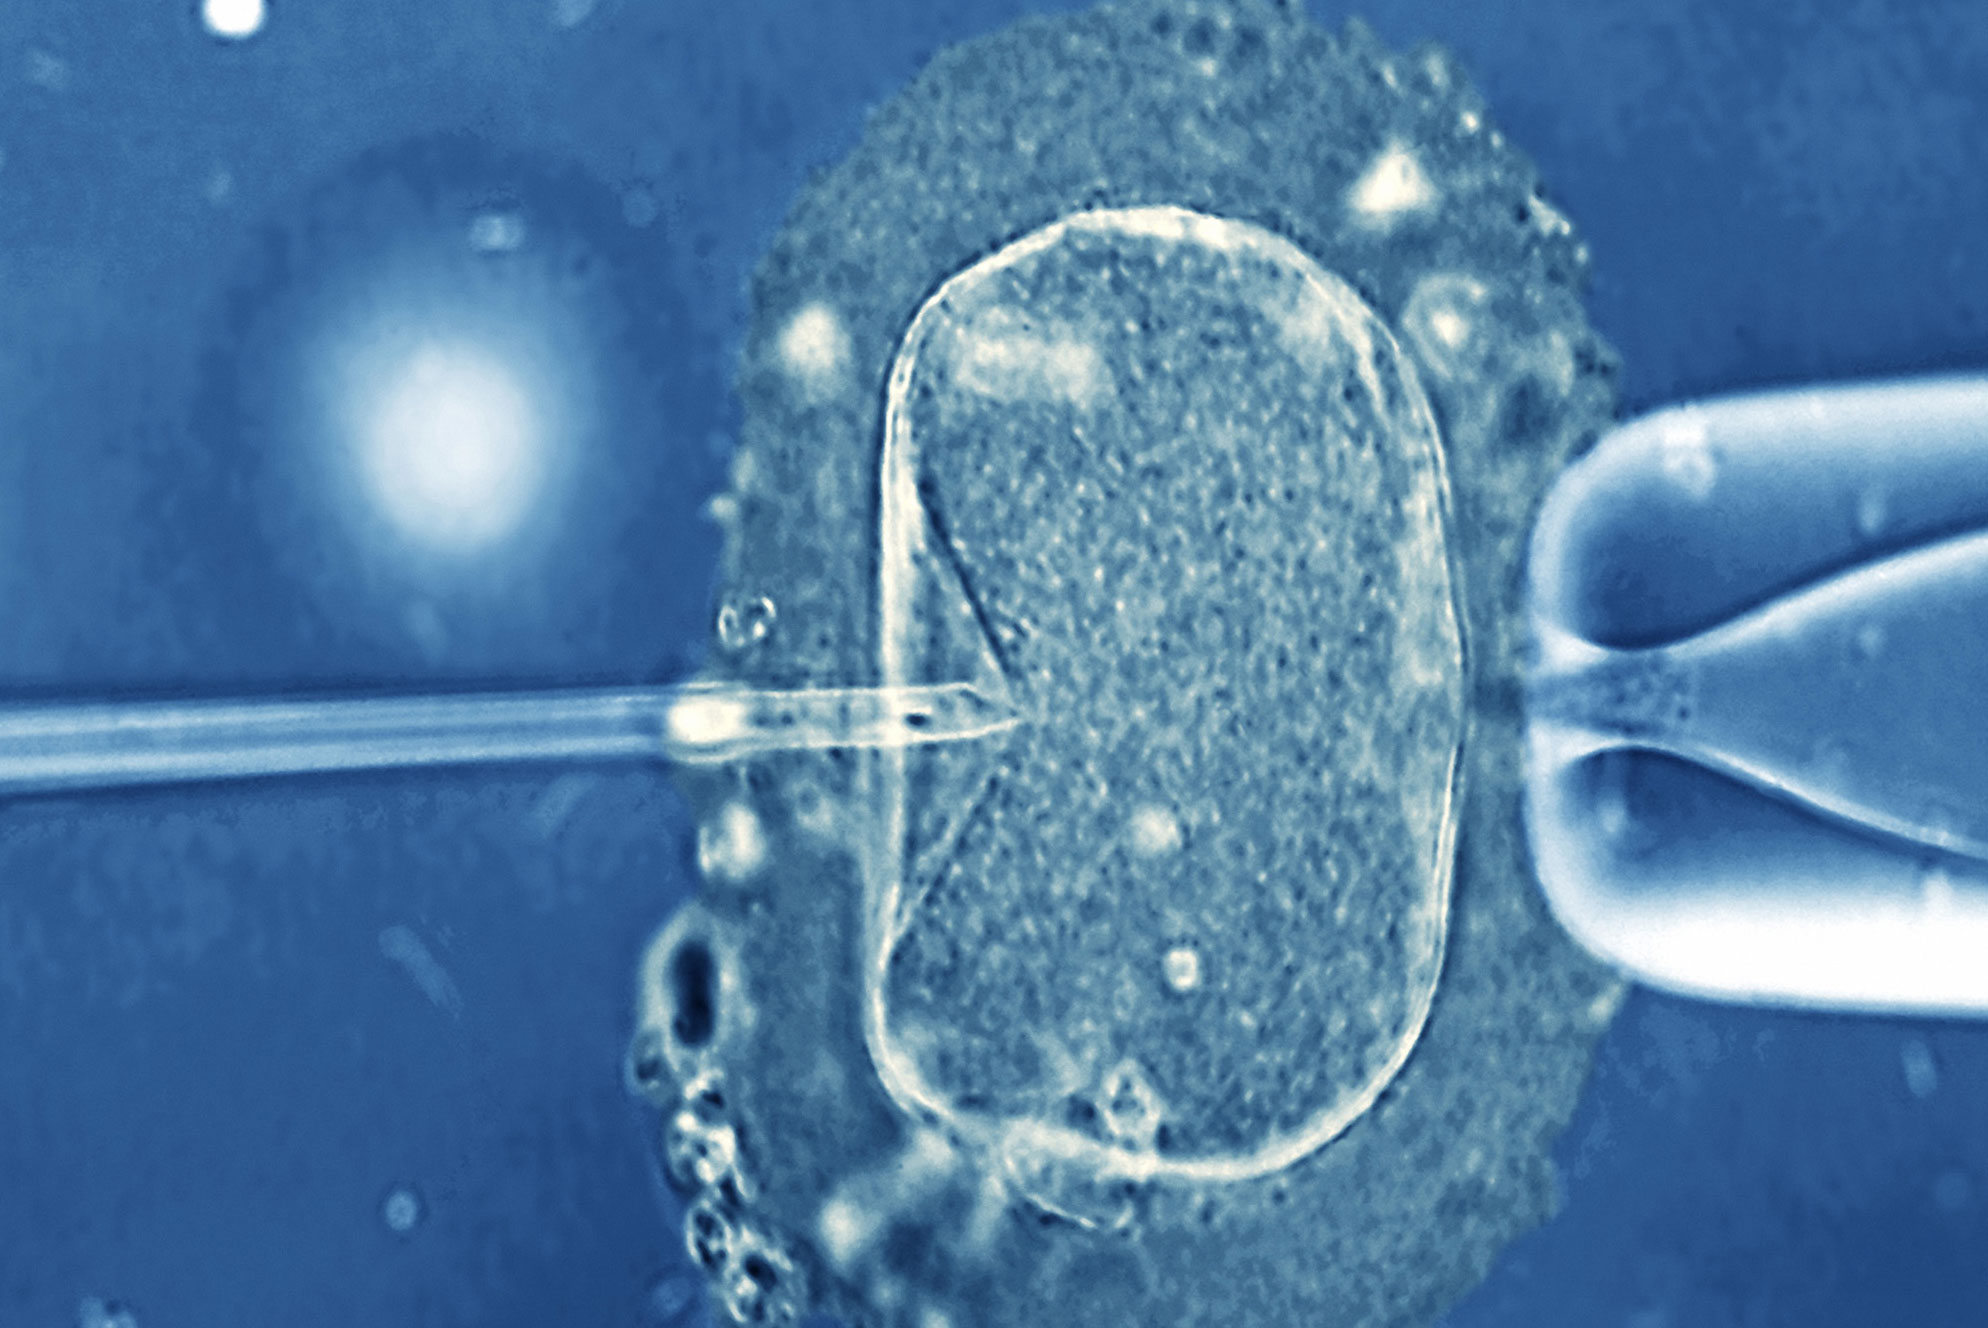 Νέες εξετάσεις εντοπίζουν γενετικές ανωμαλίες πριν την εμφύτευση του εμβρύου